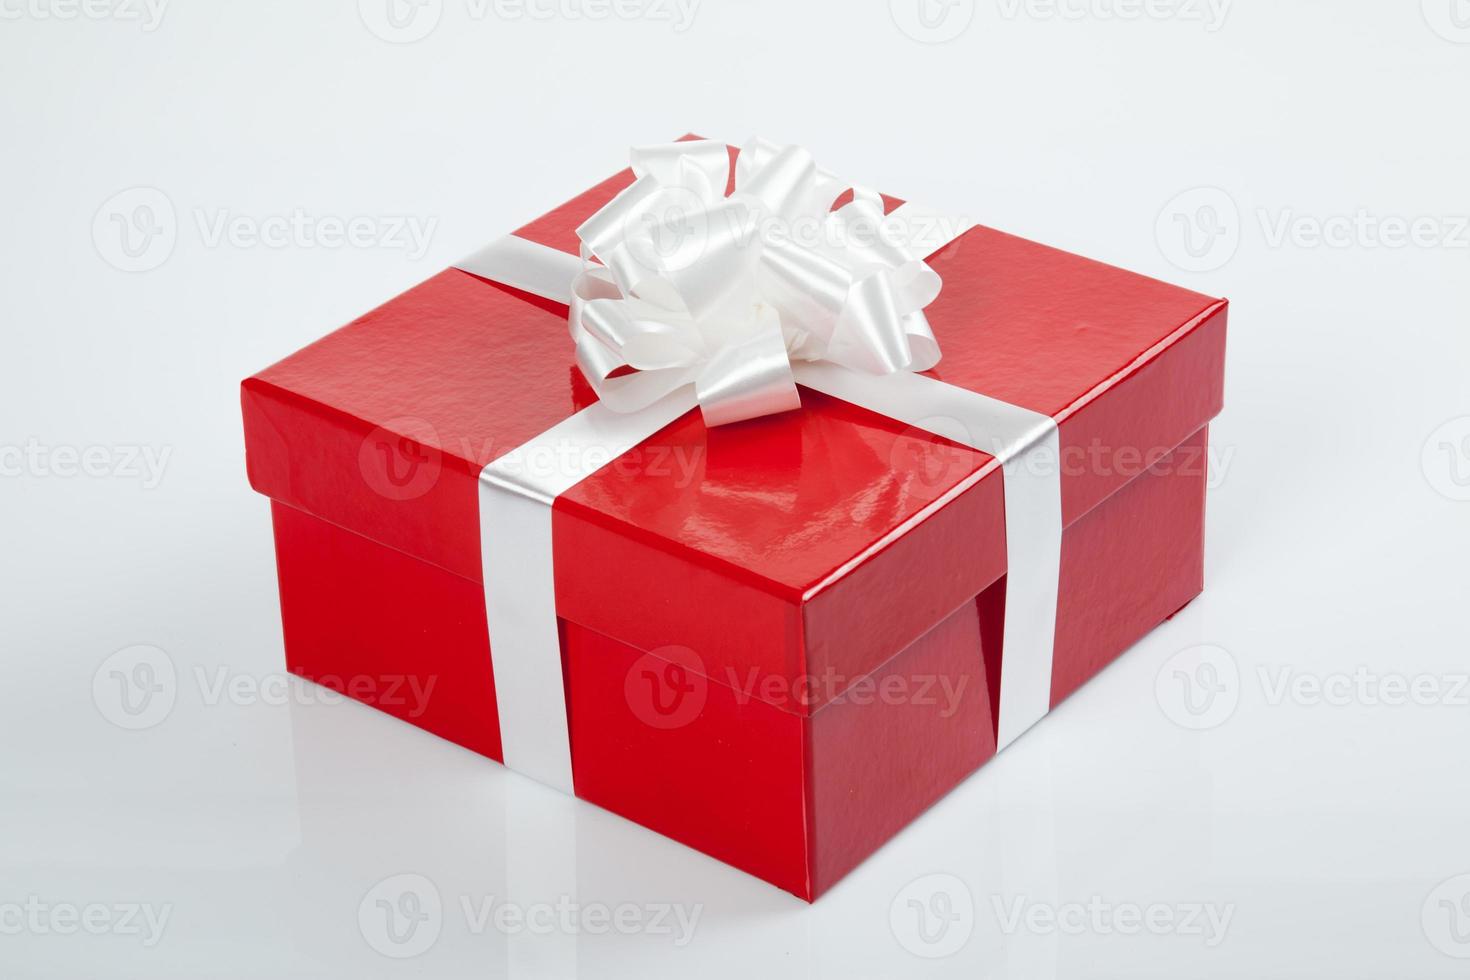 caixa de presente vermelha com laço branco para o natal foto